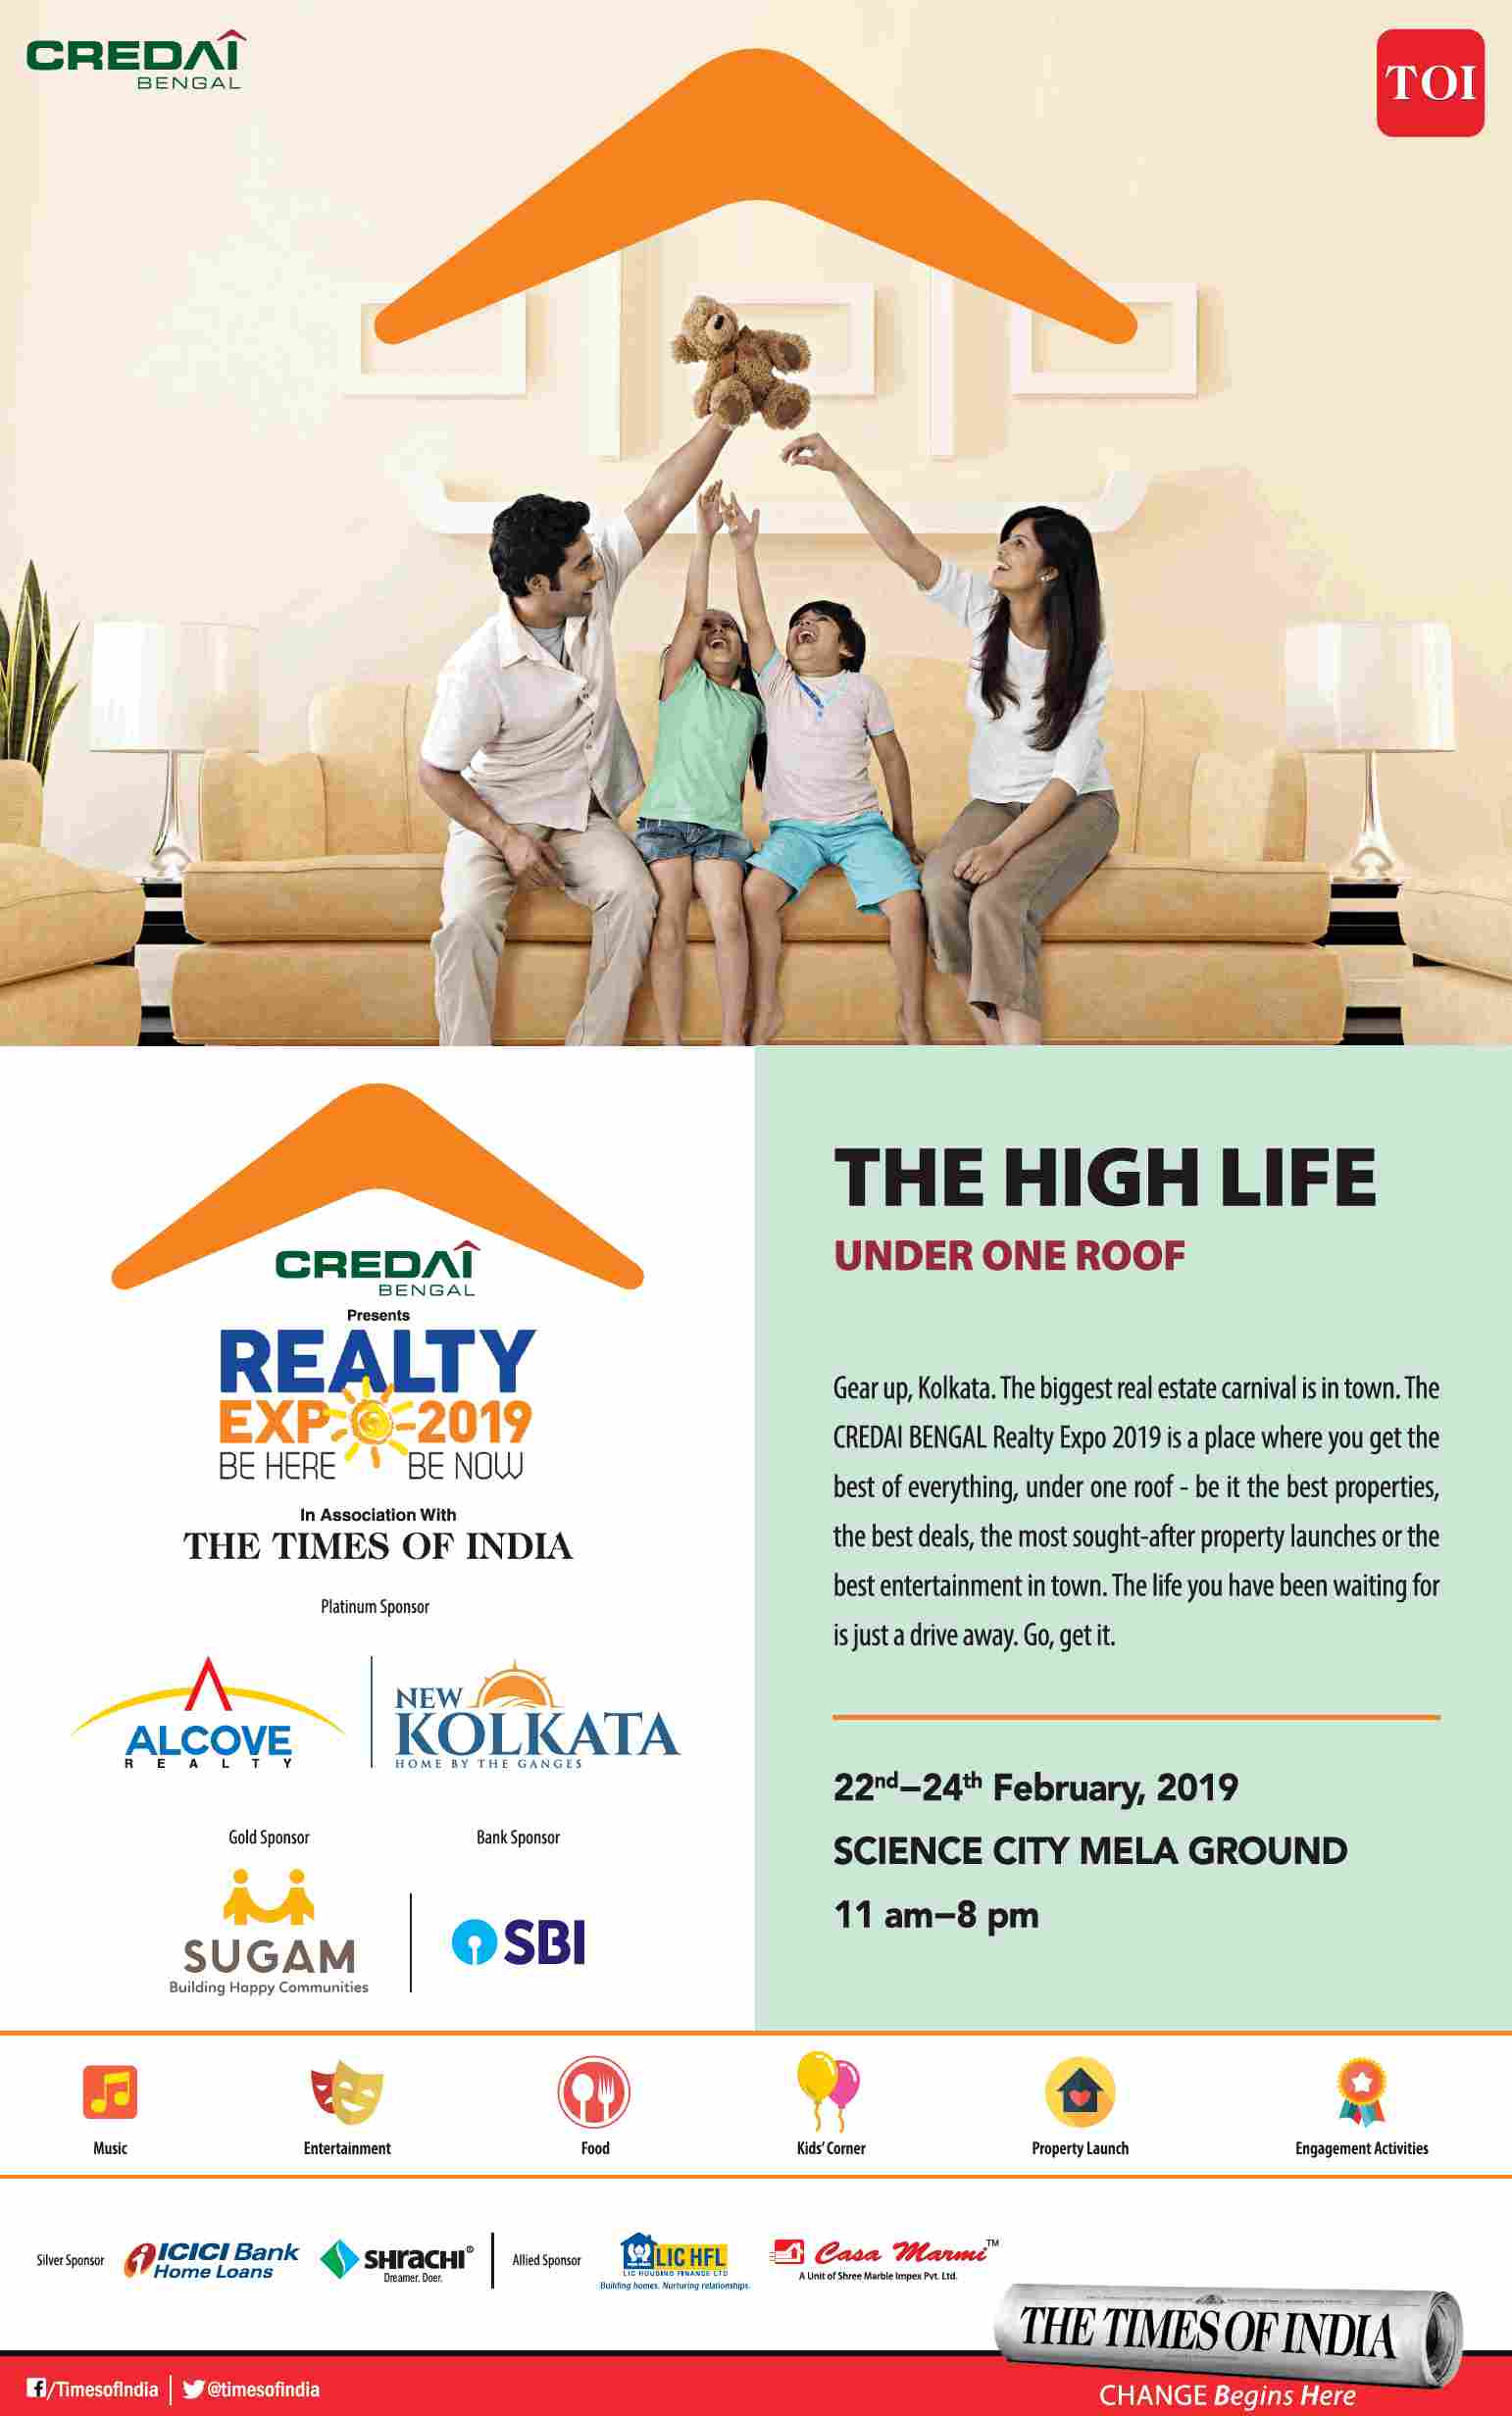 Presenting CREDAI BENGAL Realty Expo 2019 in Kolkata Update